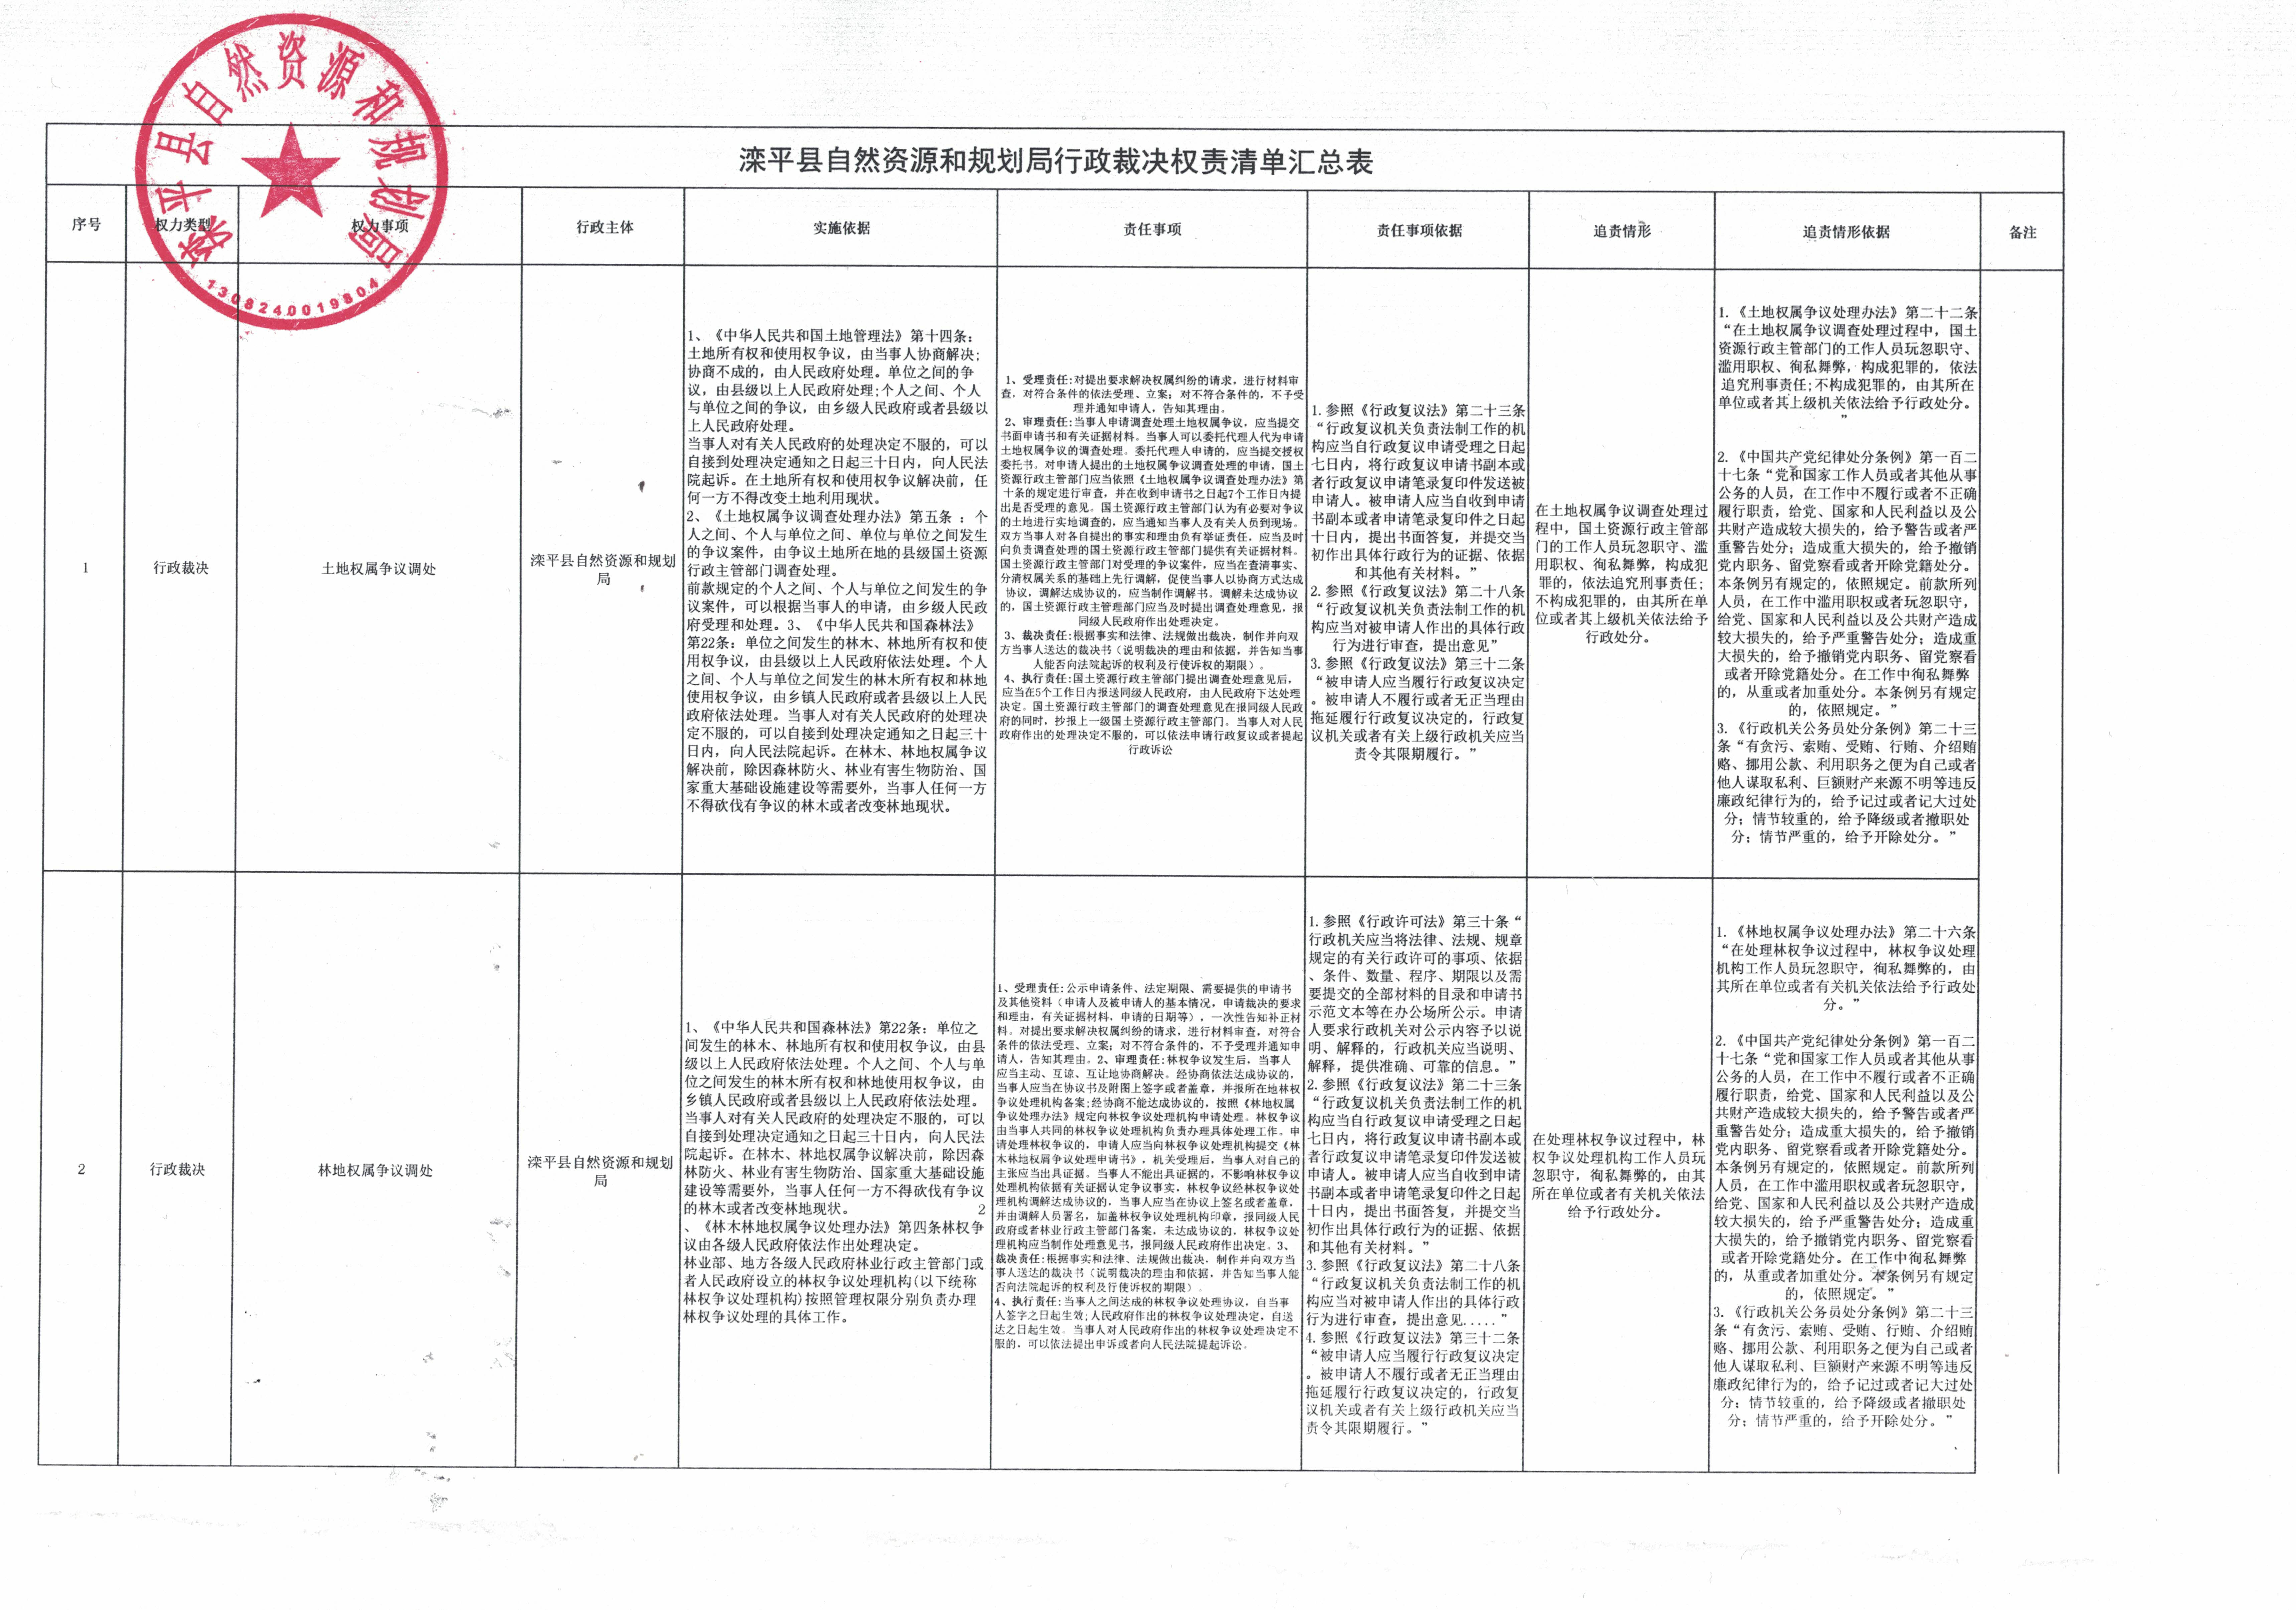 滦平县自然资源和规划局行政裁决权责清单汇总表.jpg